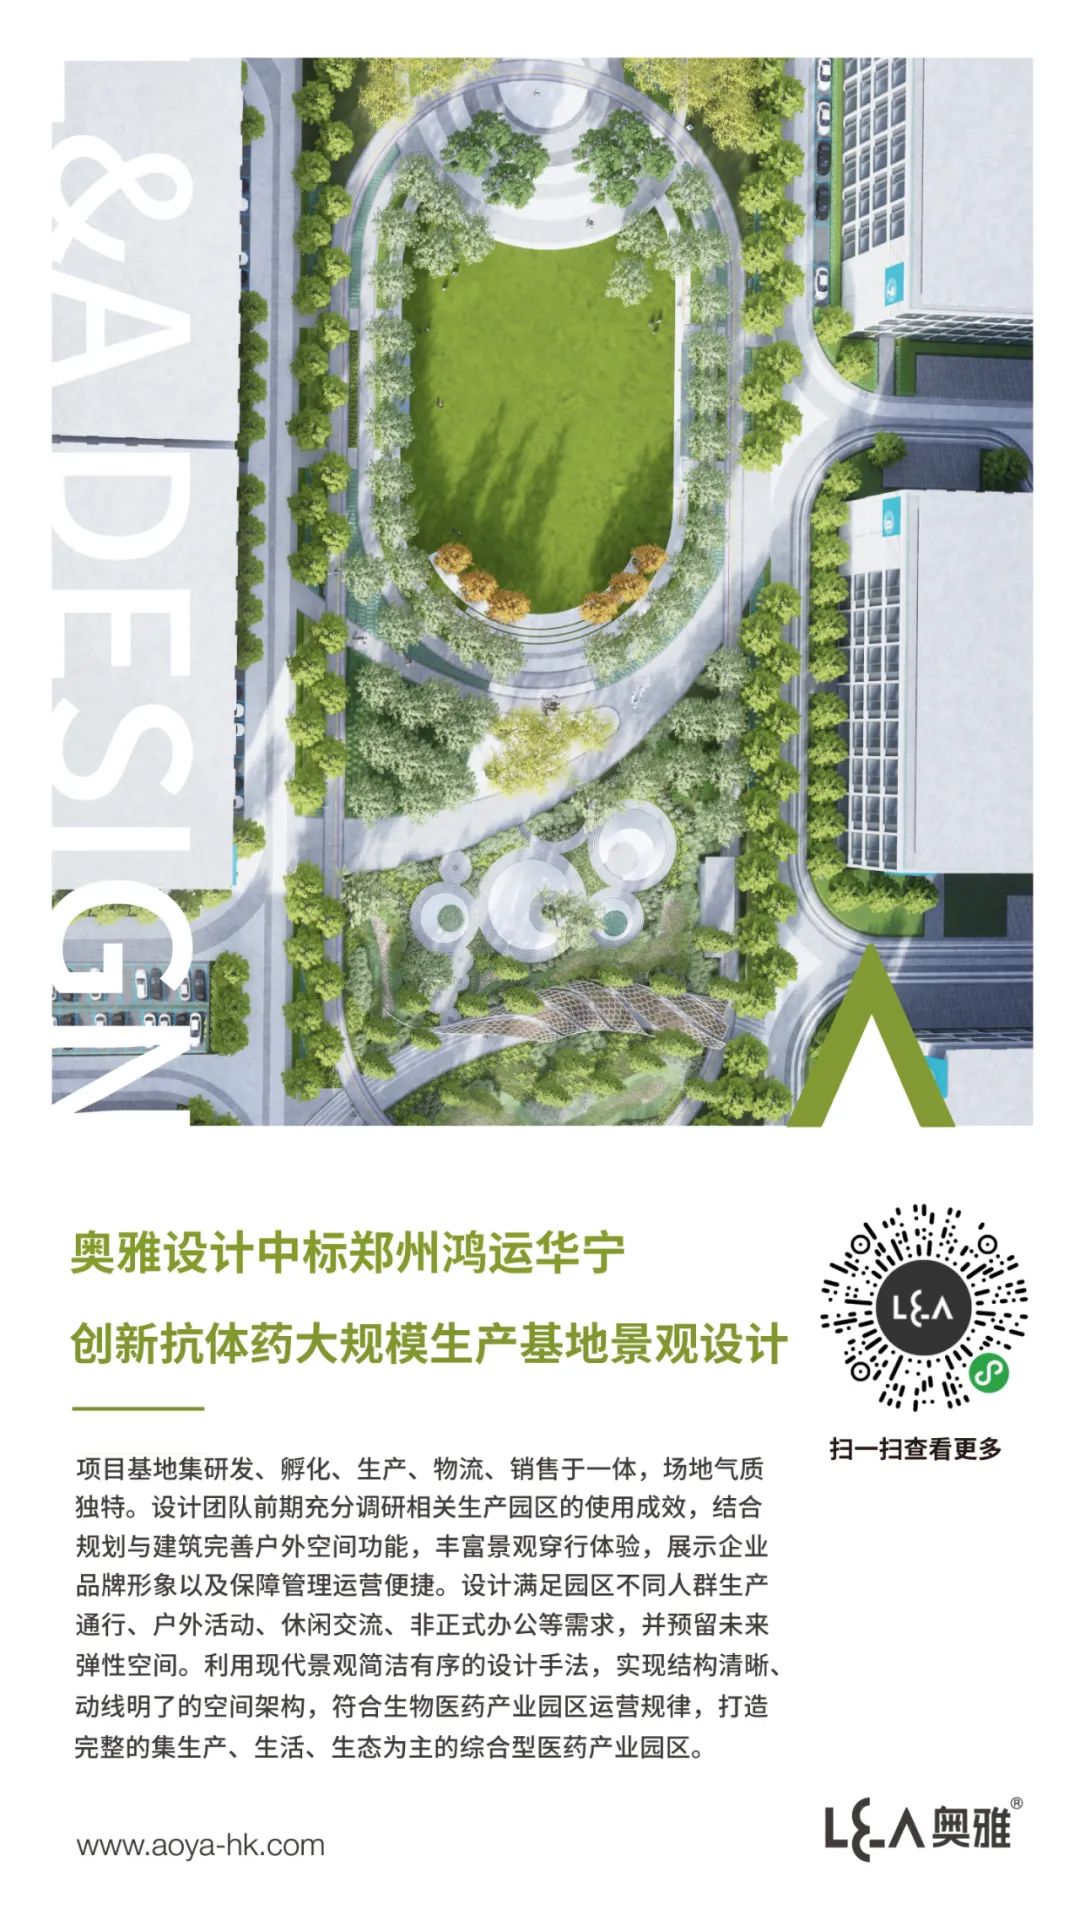 奥雅设计中标郑州鸿运华宁创新抗体药大规模生产基地建设项目